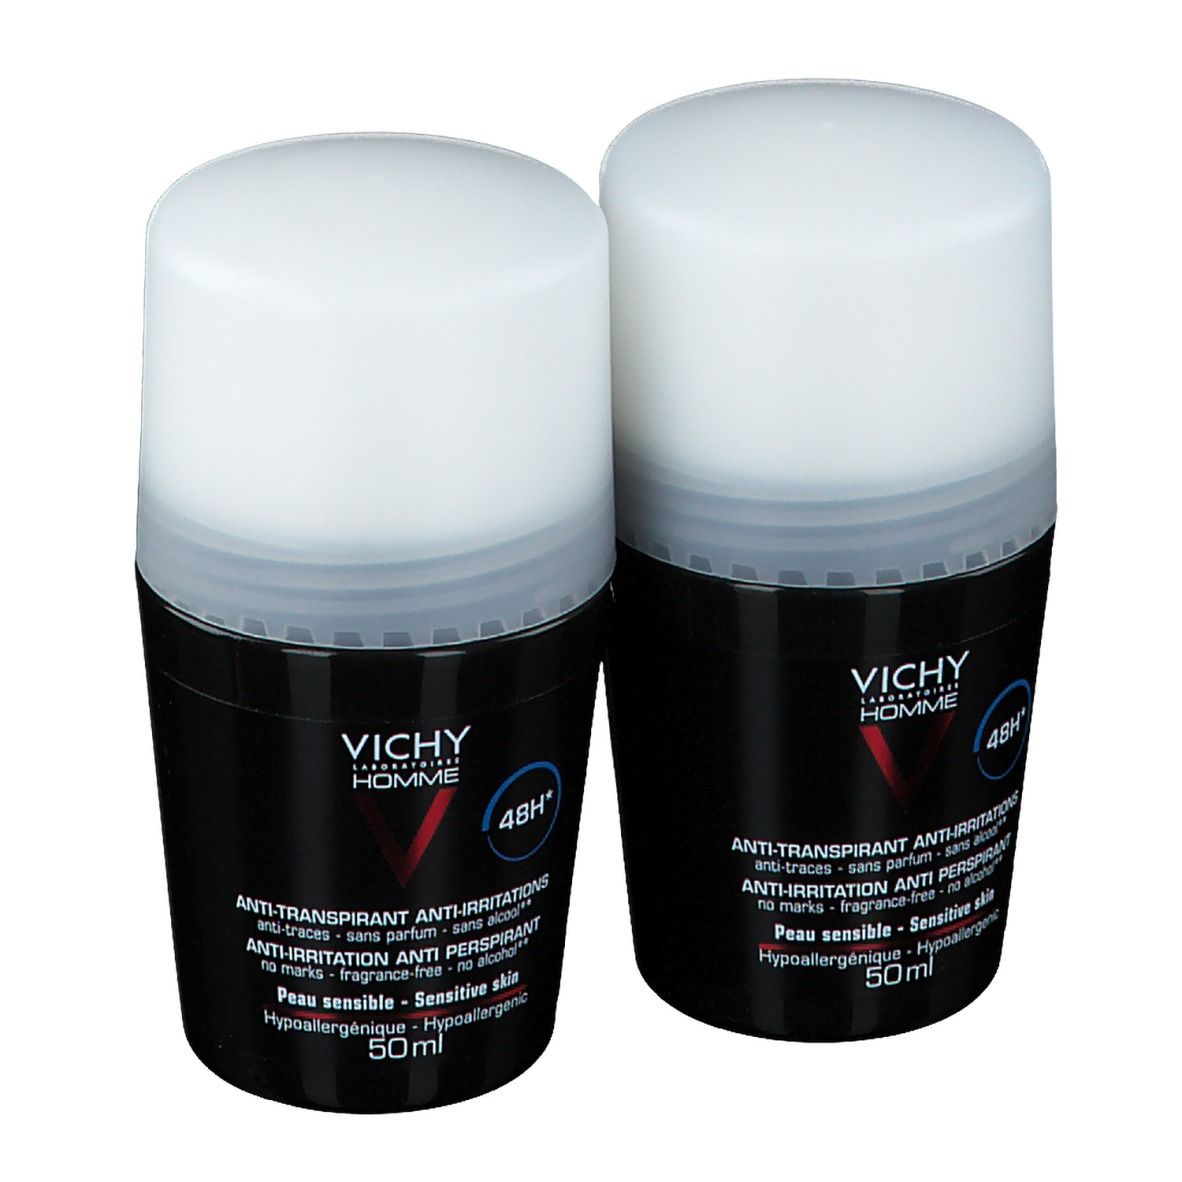 VICHY HOMME Antitranspirant Deodorant 48h empfindliche Haut